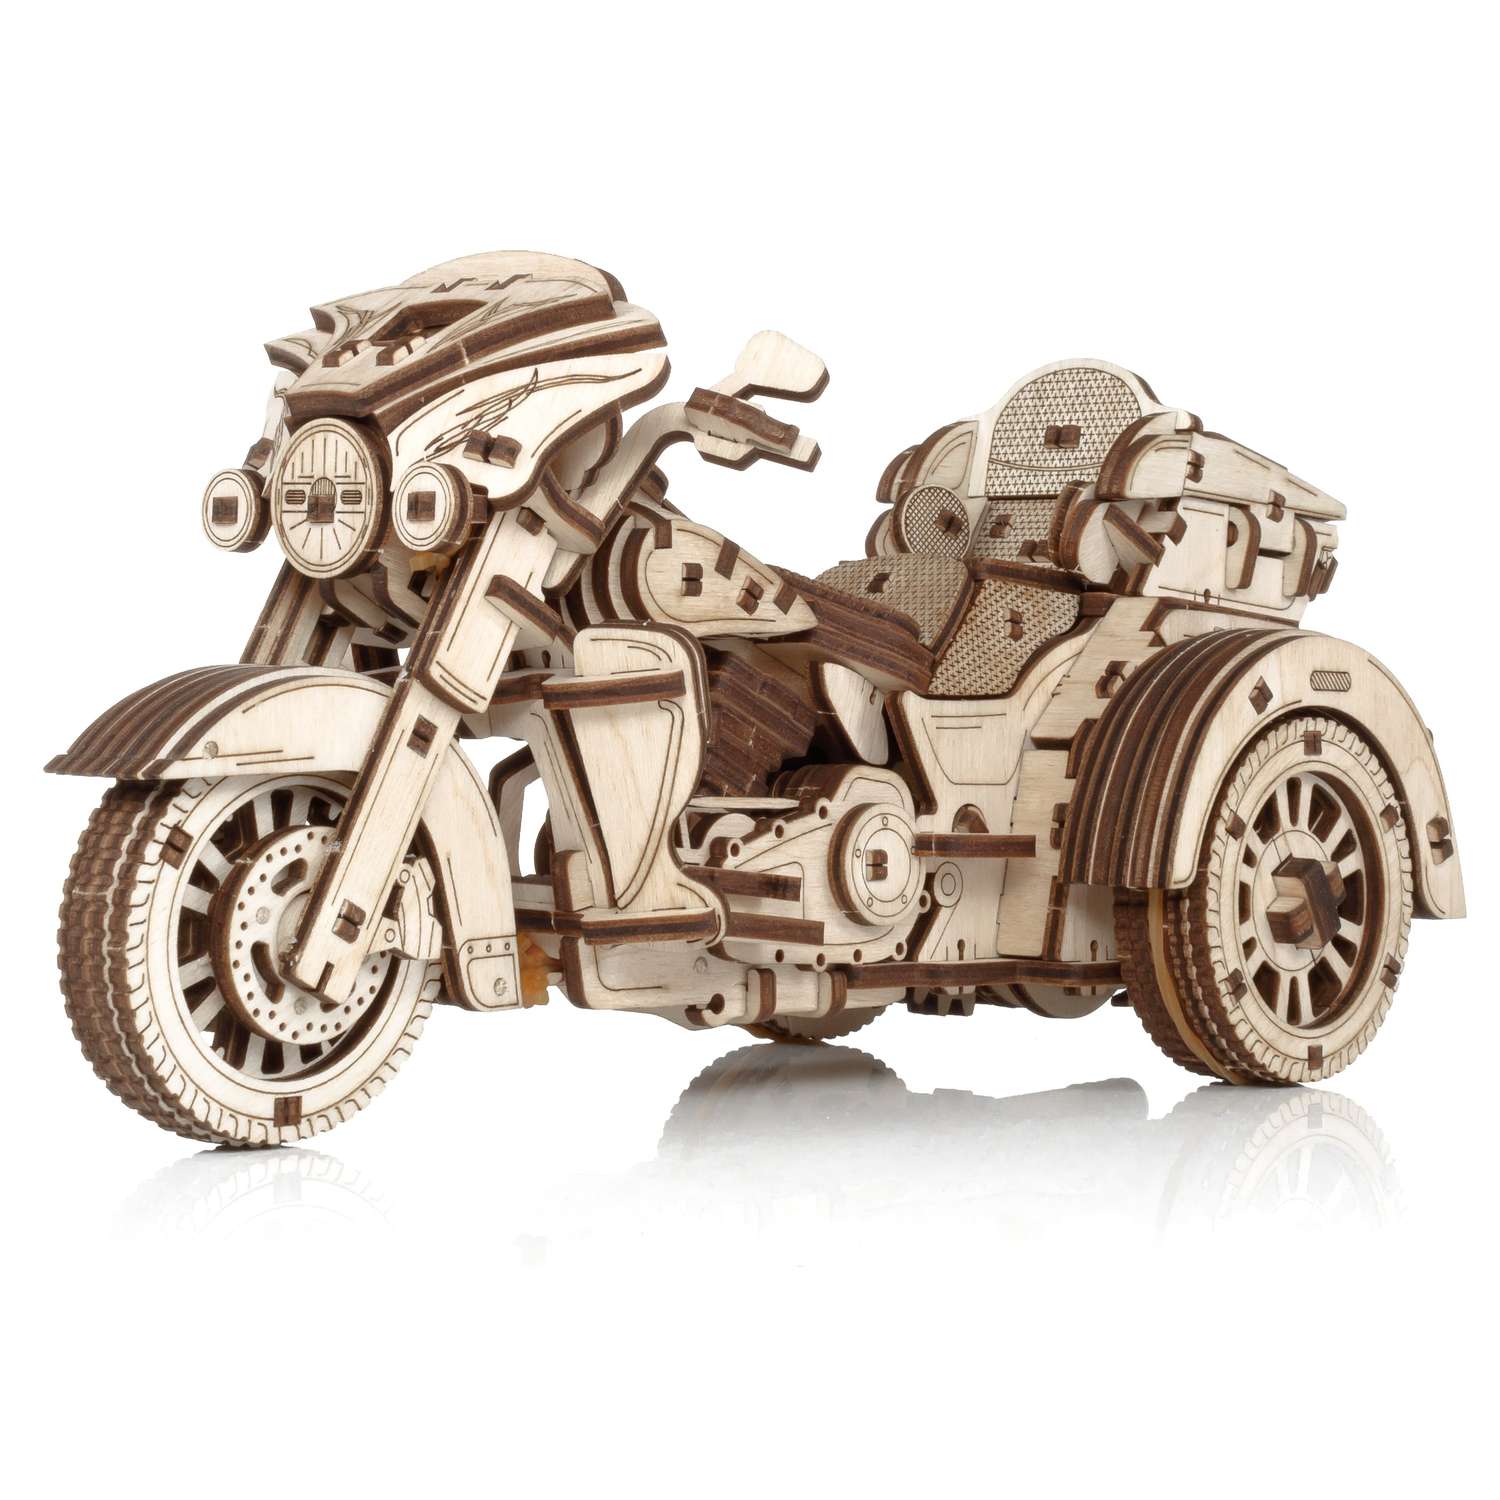 Сборная модель Eco Wood Art Мотоцикл Трайк из дерева ETrike - фото 1